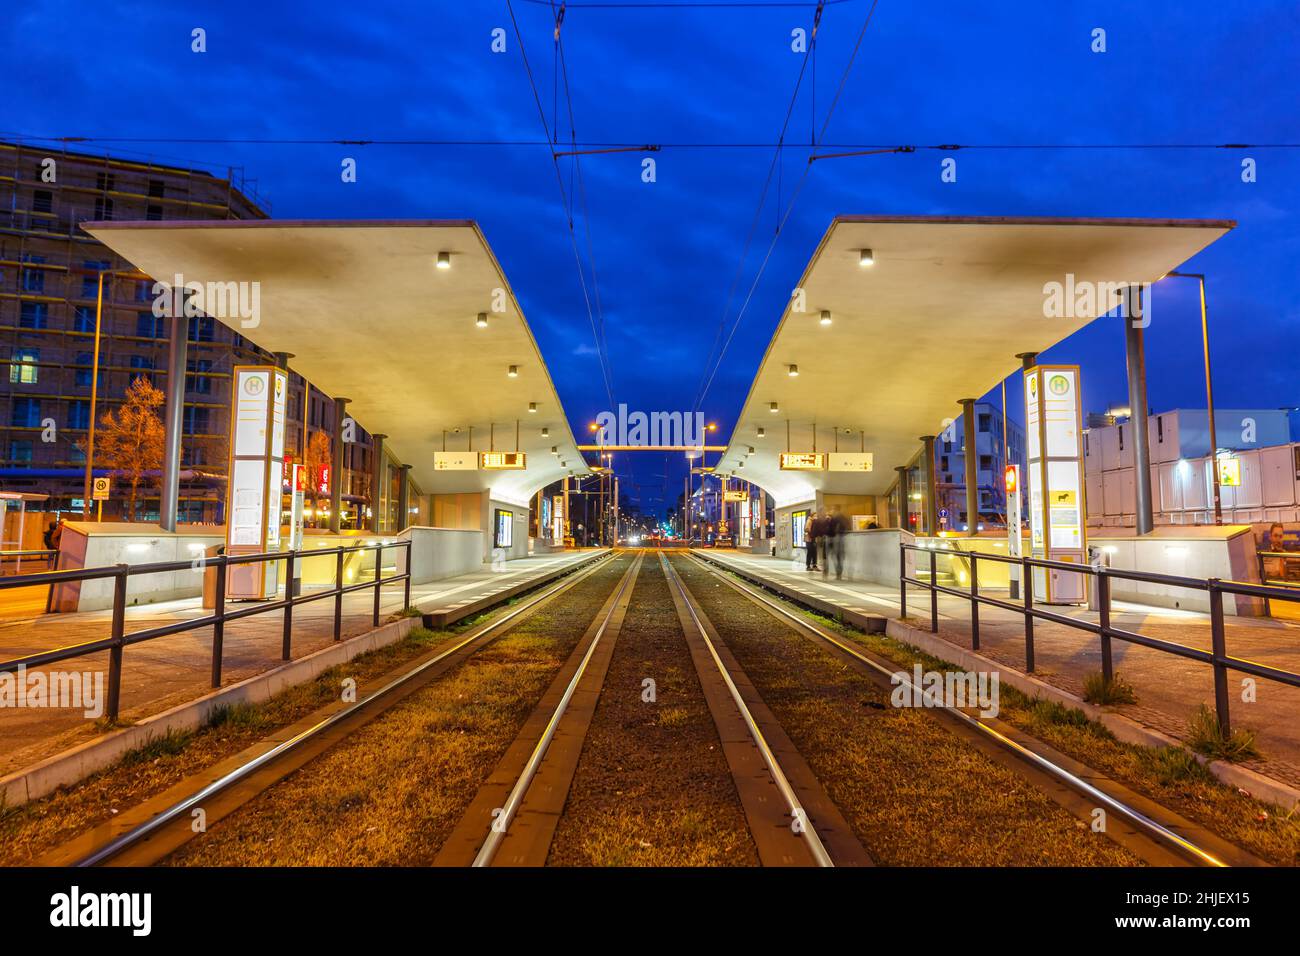 Berlin, Allemagne - 22 avril 2021 : arrêt de tramway, transport en commun léger à la gare centrale Hauptbahnhof de Berlin, Allemagne. Banque D'Images